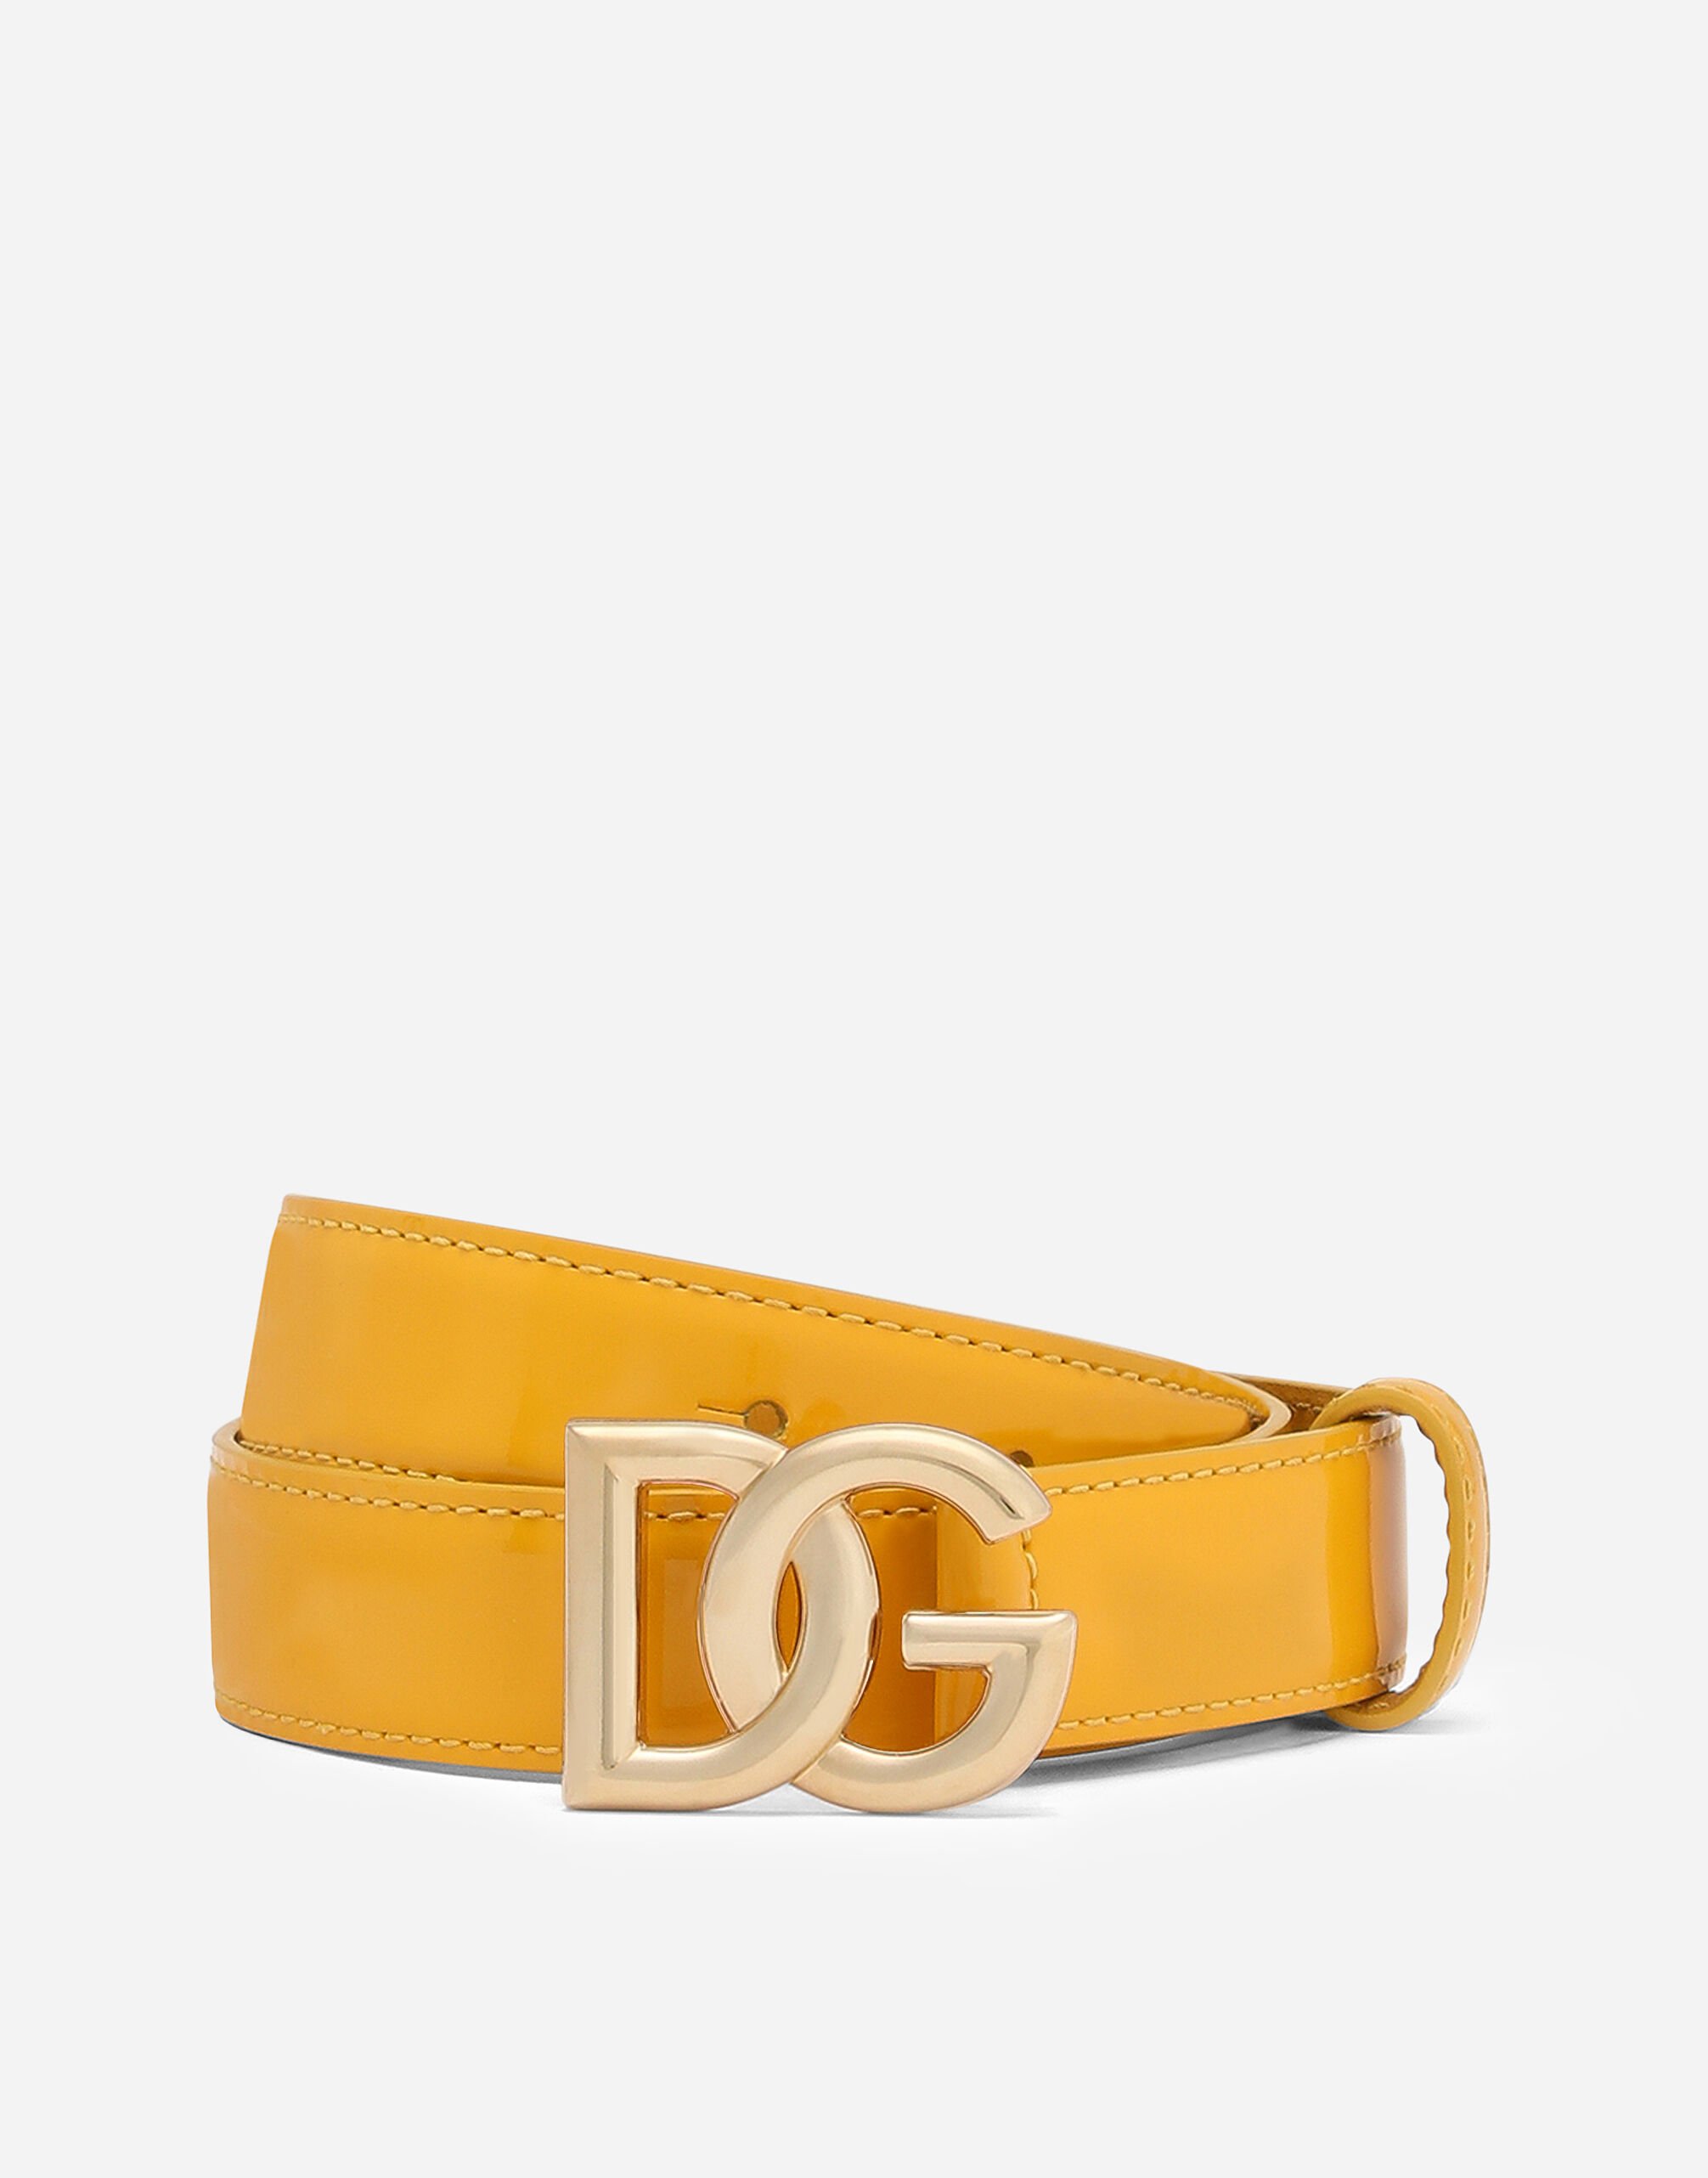 Dolce & Gabbana DG logo belt Yellow BB6003A1001